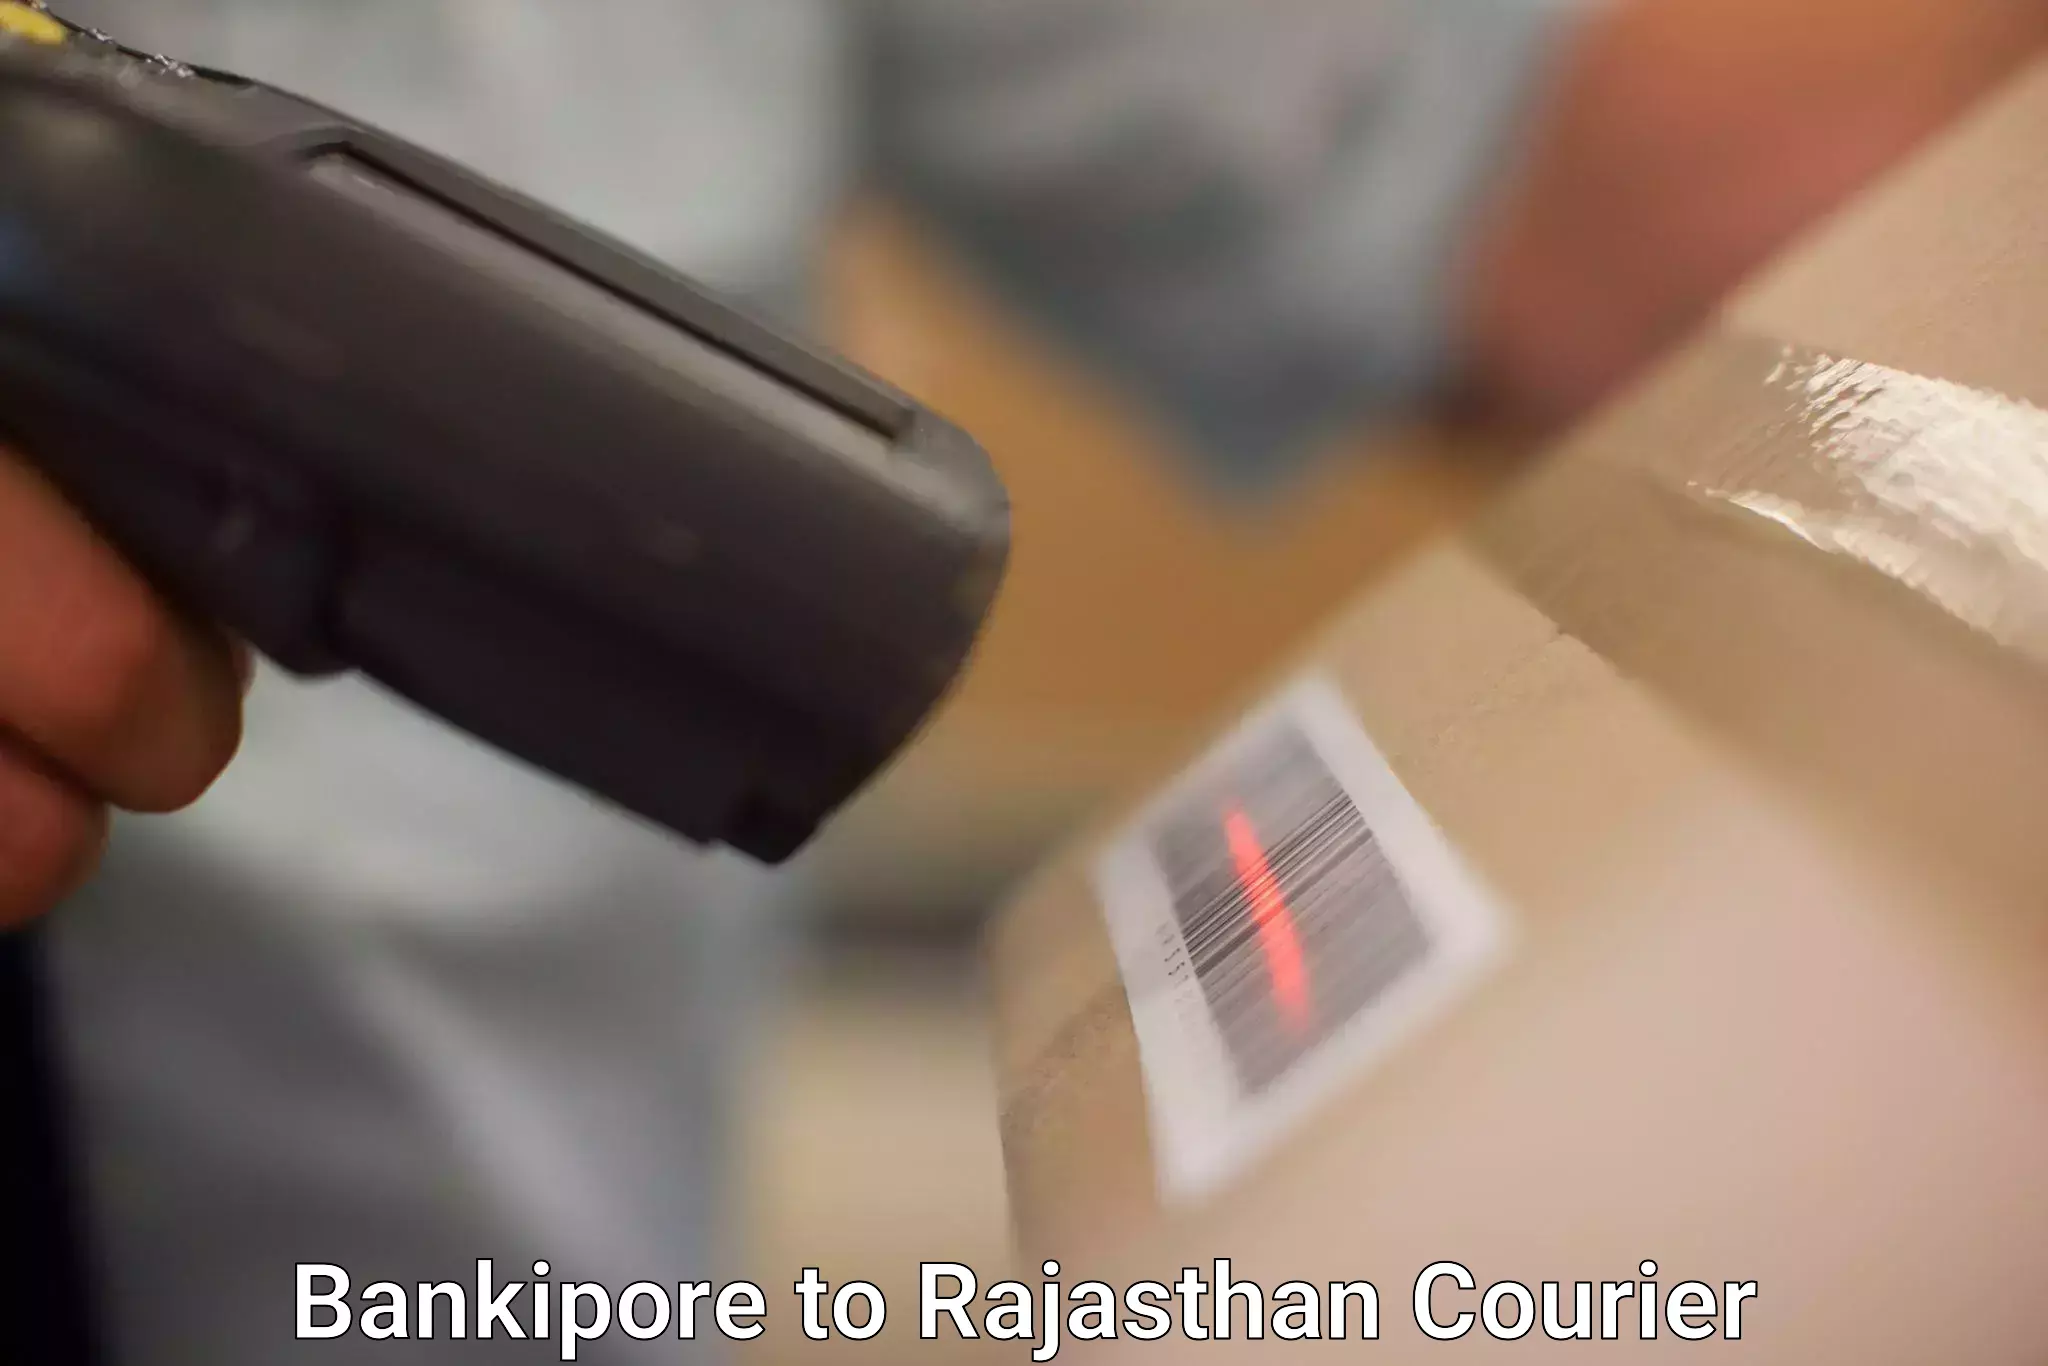 Digital courier platforms Bankipore to Jaipur